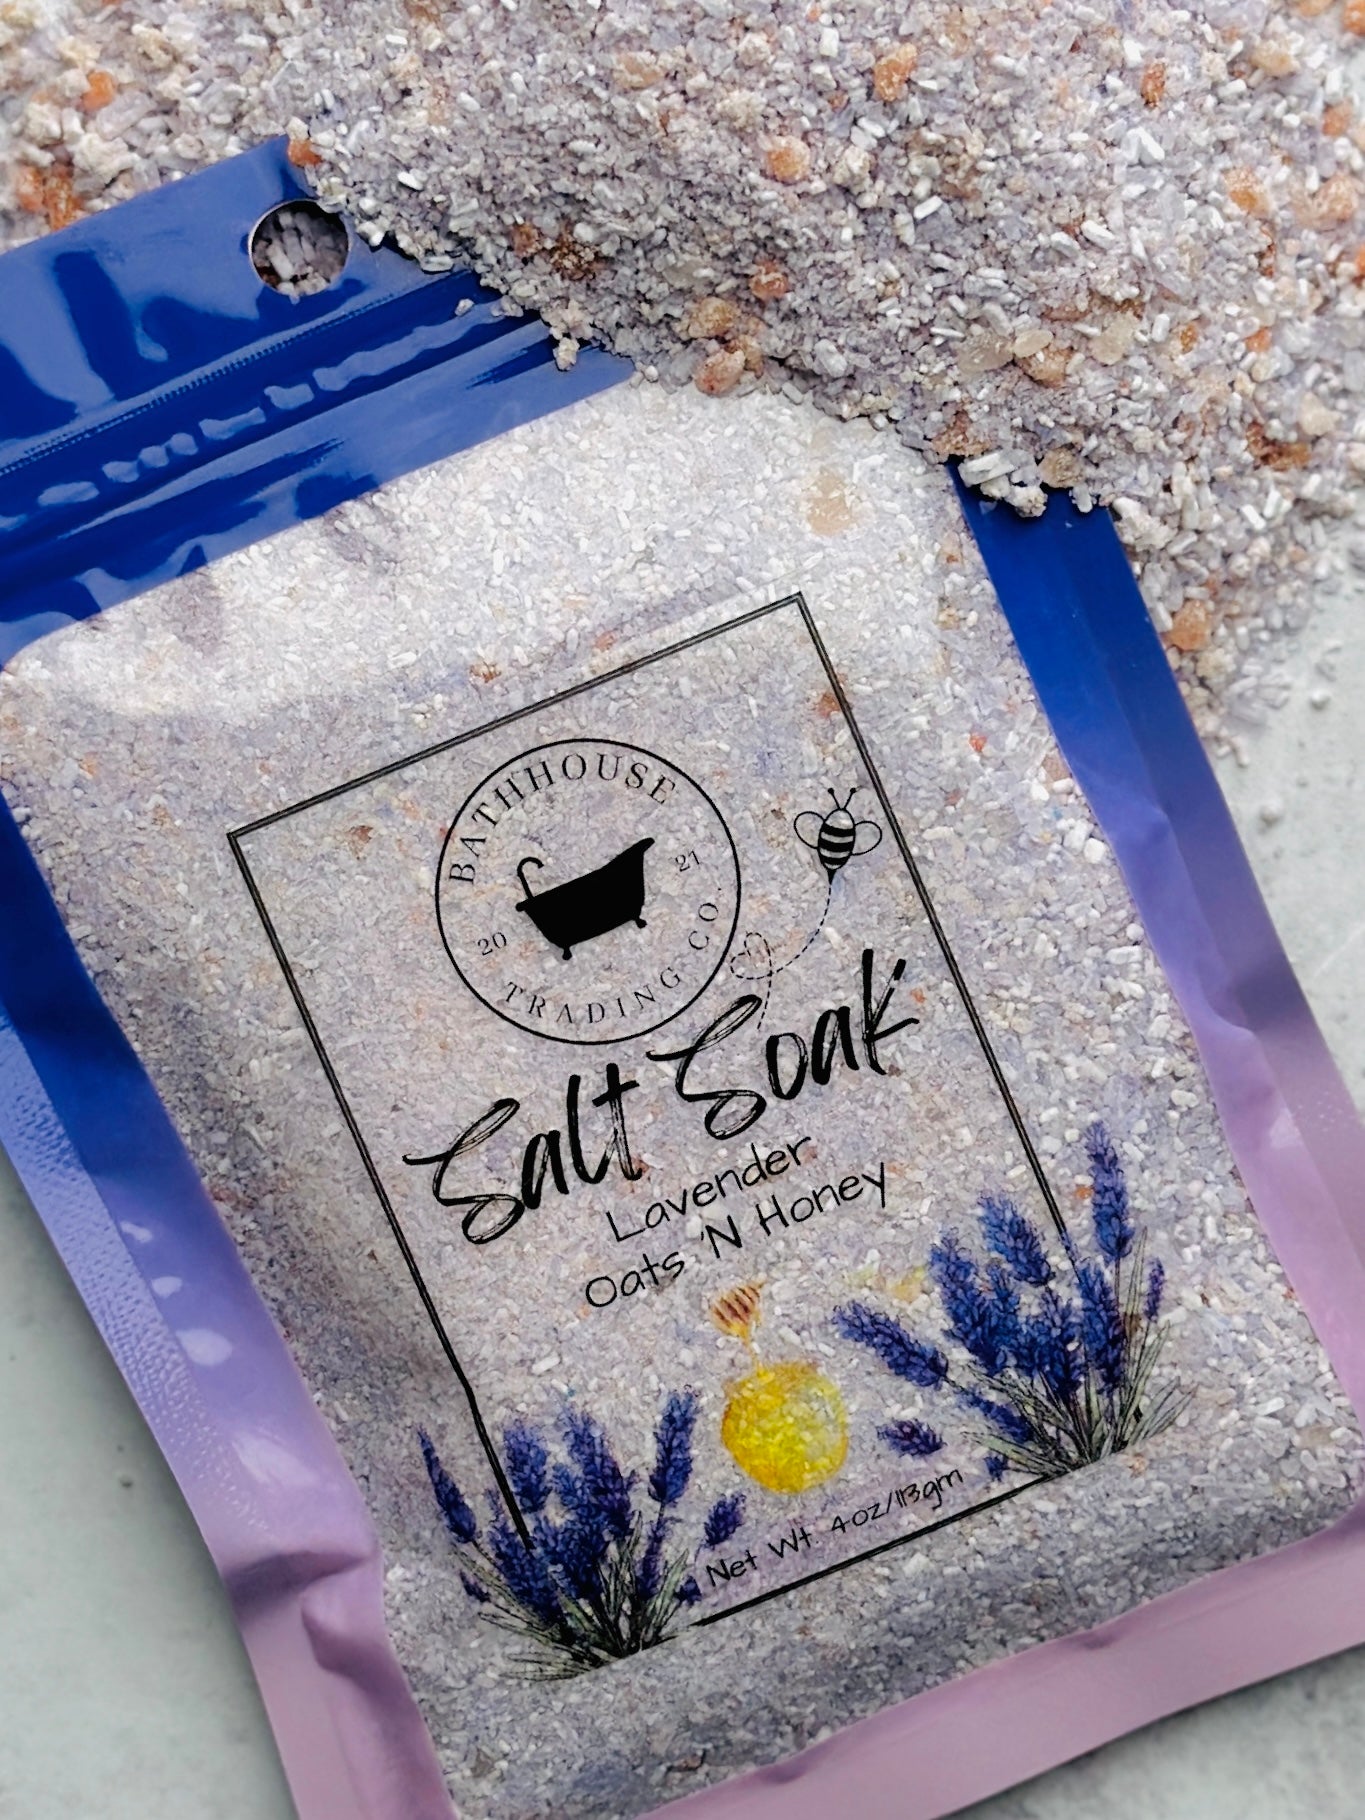 Lavender Oats 'N Honey Salt Soak 4oz - Bathhouse Trading Company